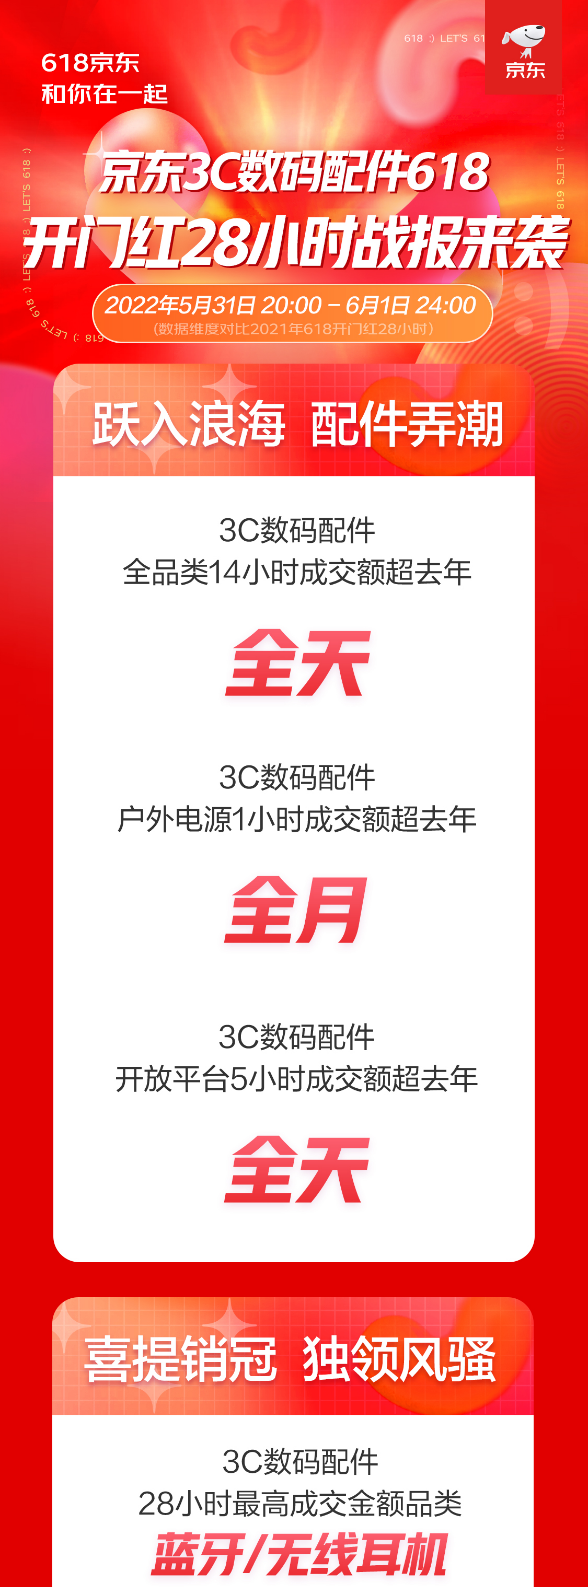 “京东618开门红3C配件创新佳绩 全品类14小时成交额超去年全天